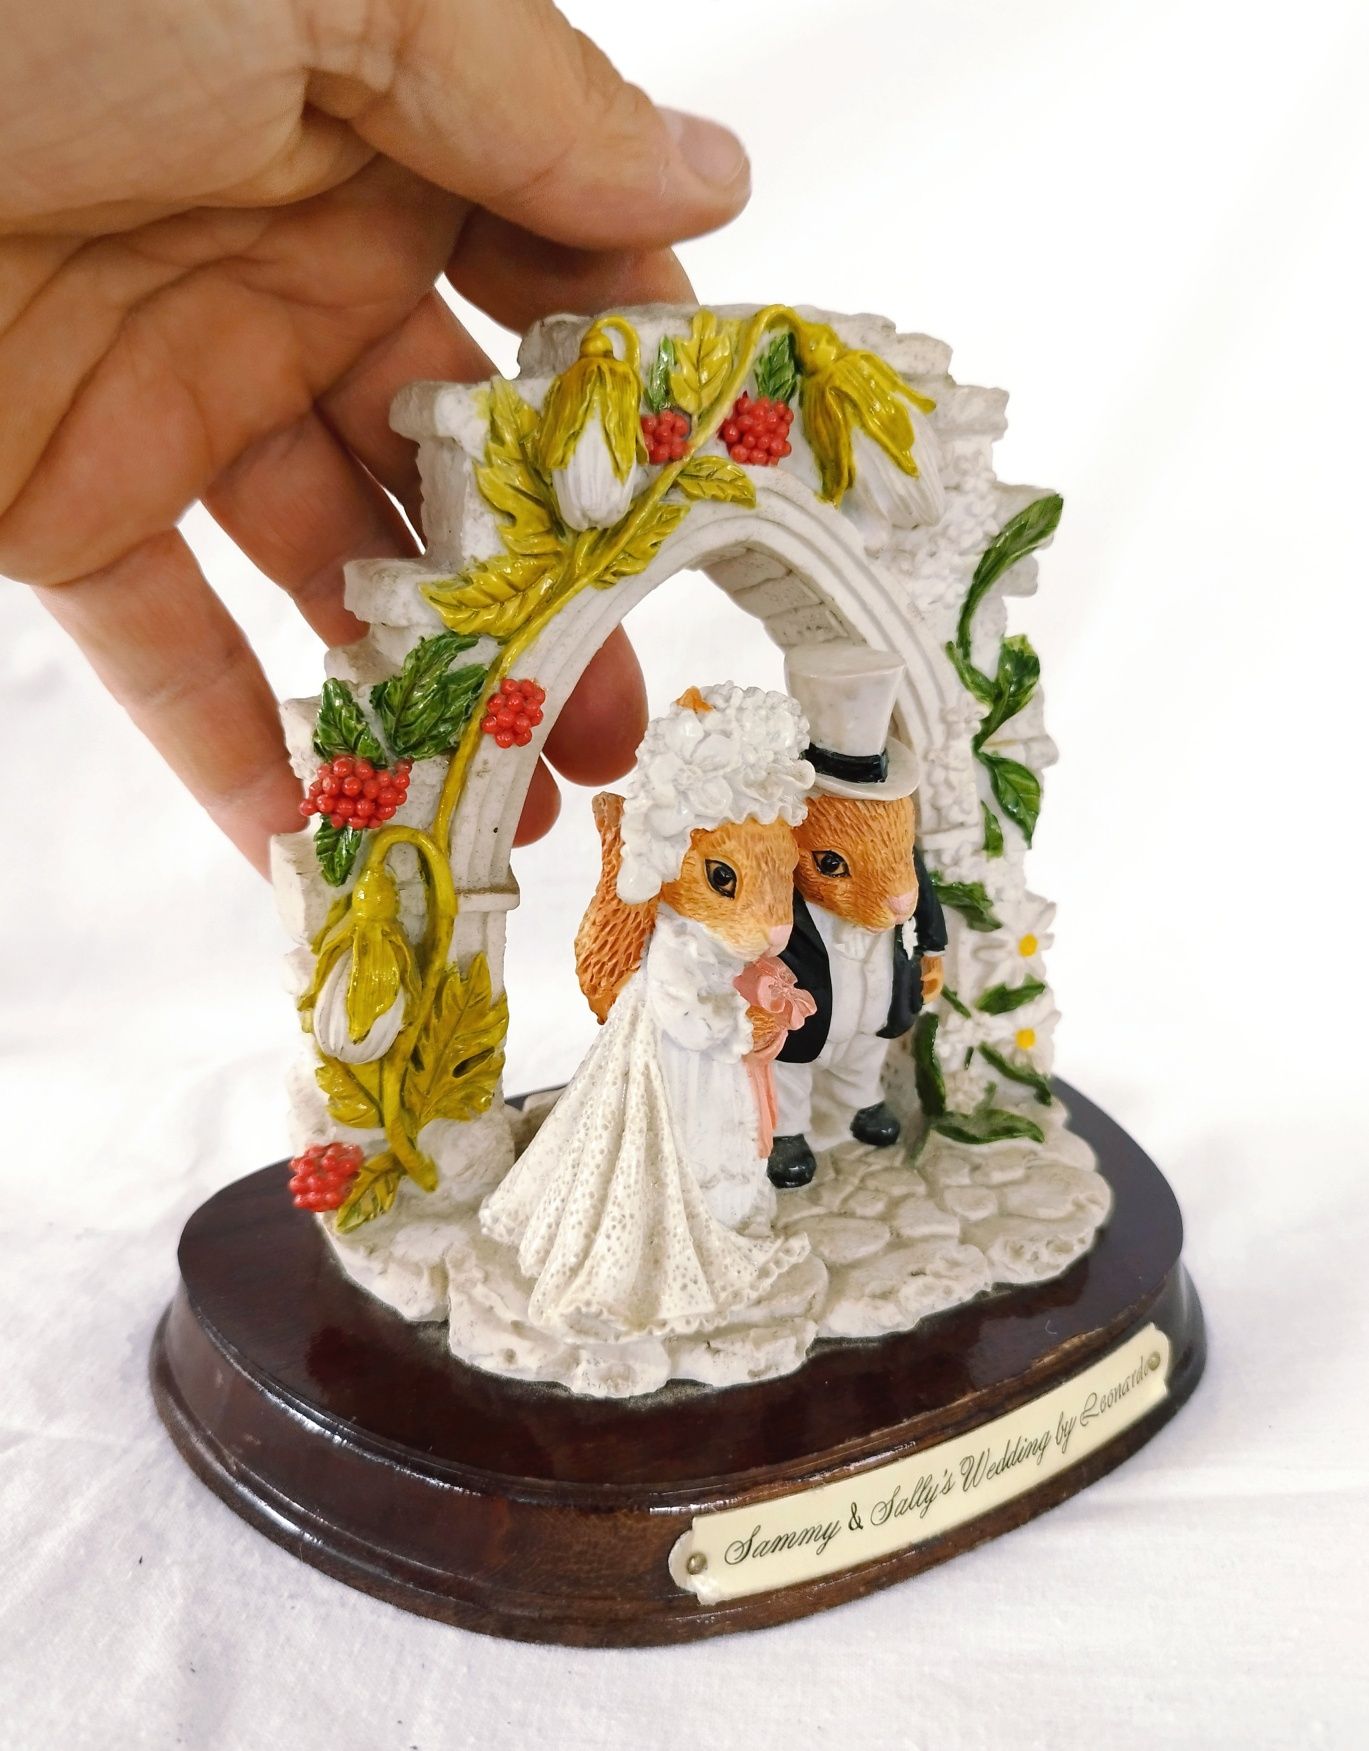 Figurină decorativă "Nunta lui Sammy și Sally", Colecția Leonardo.